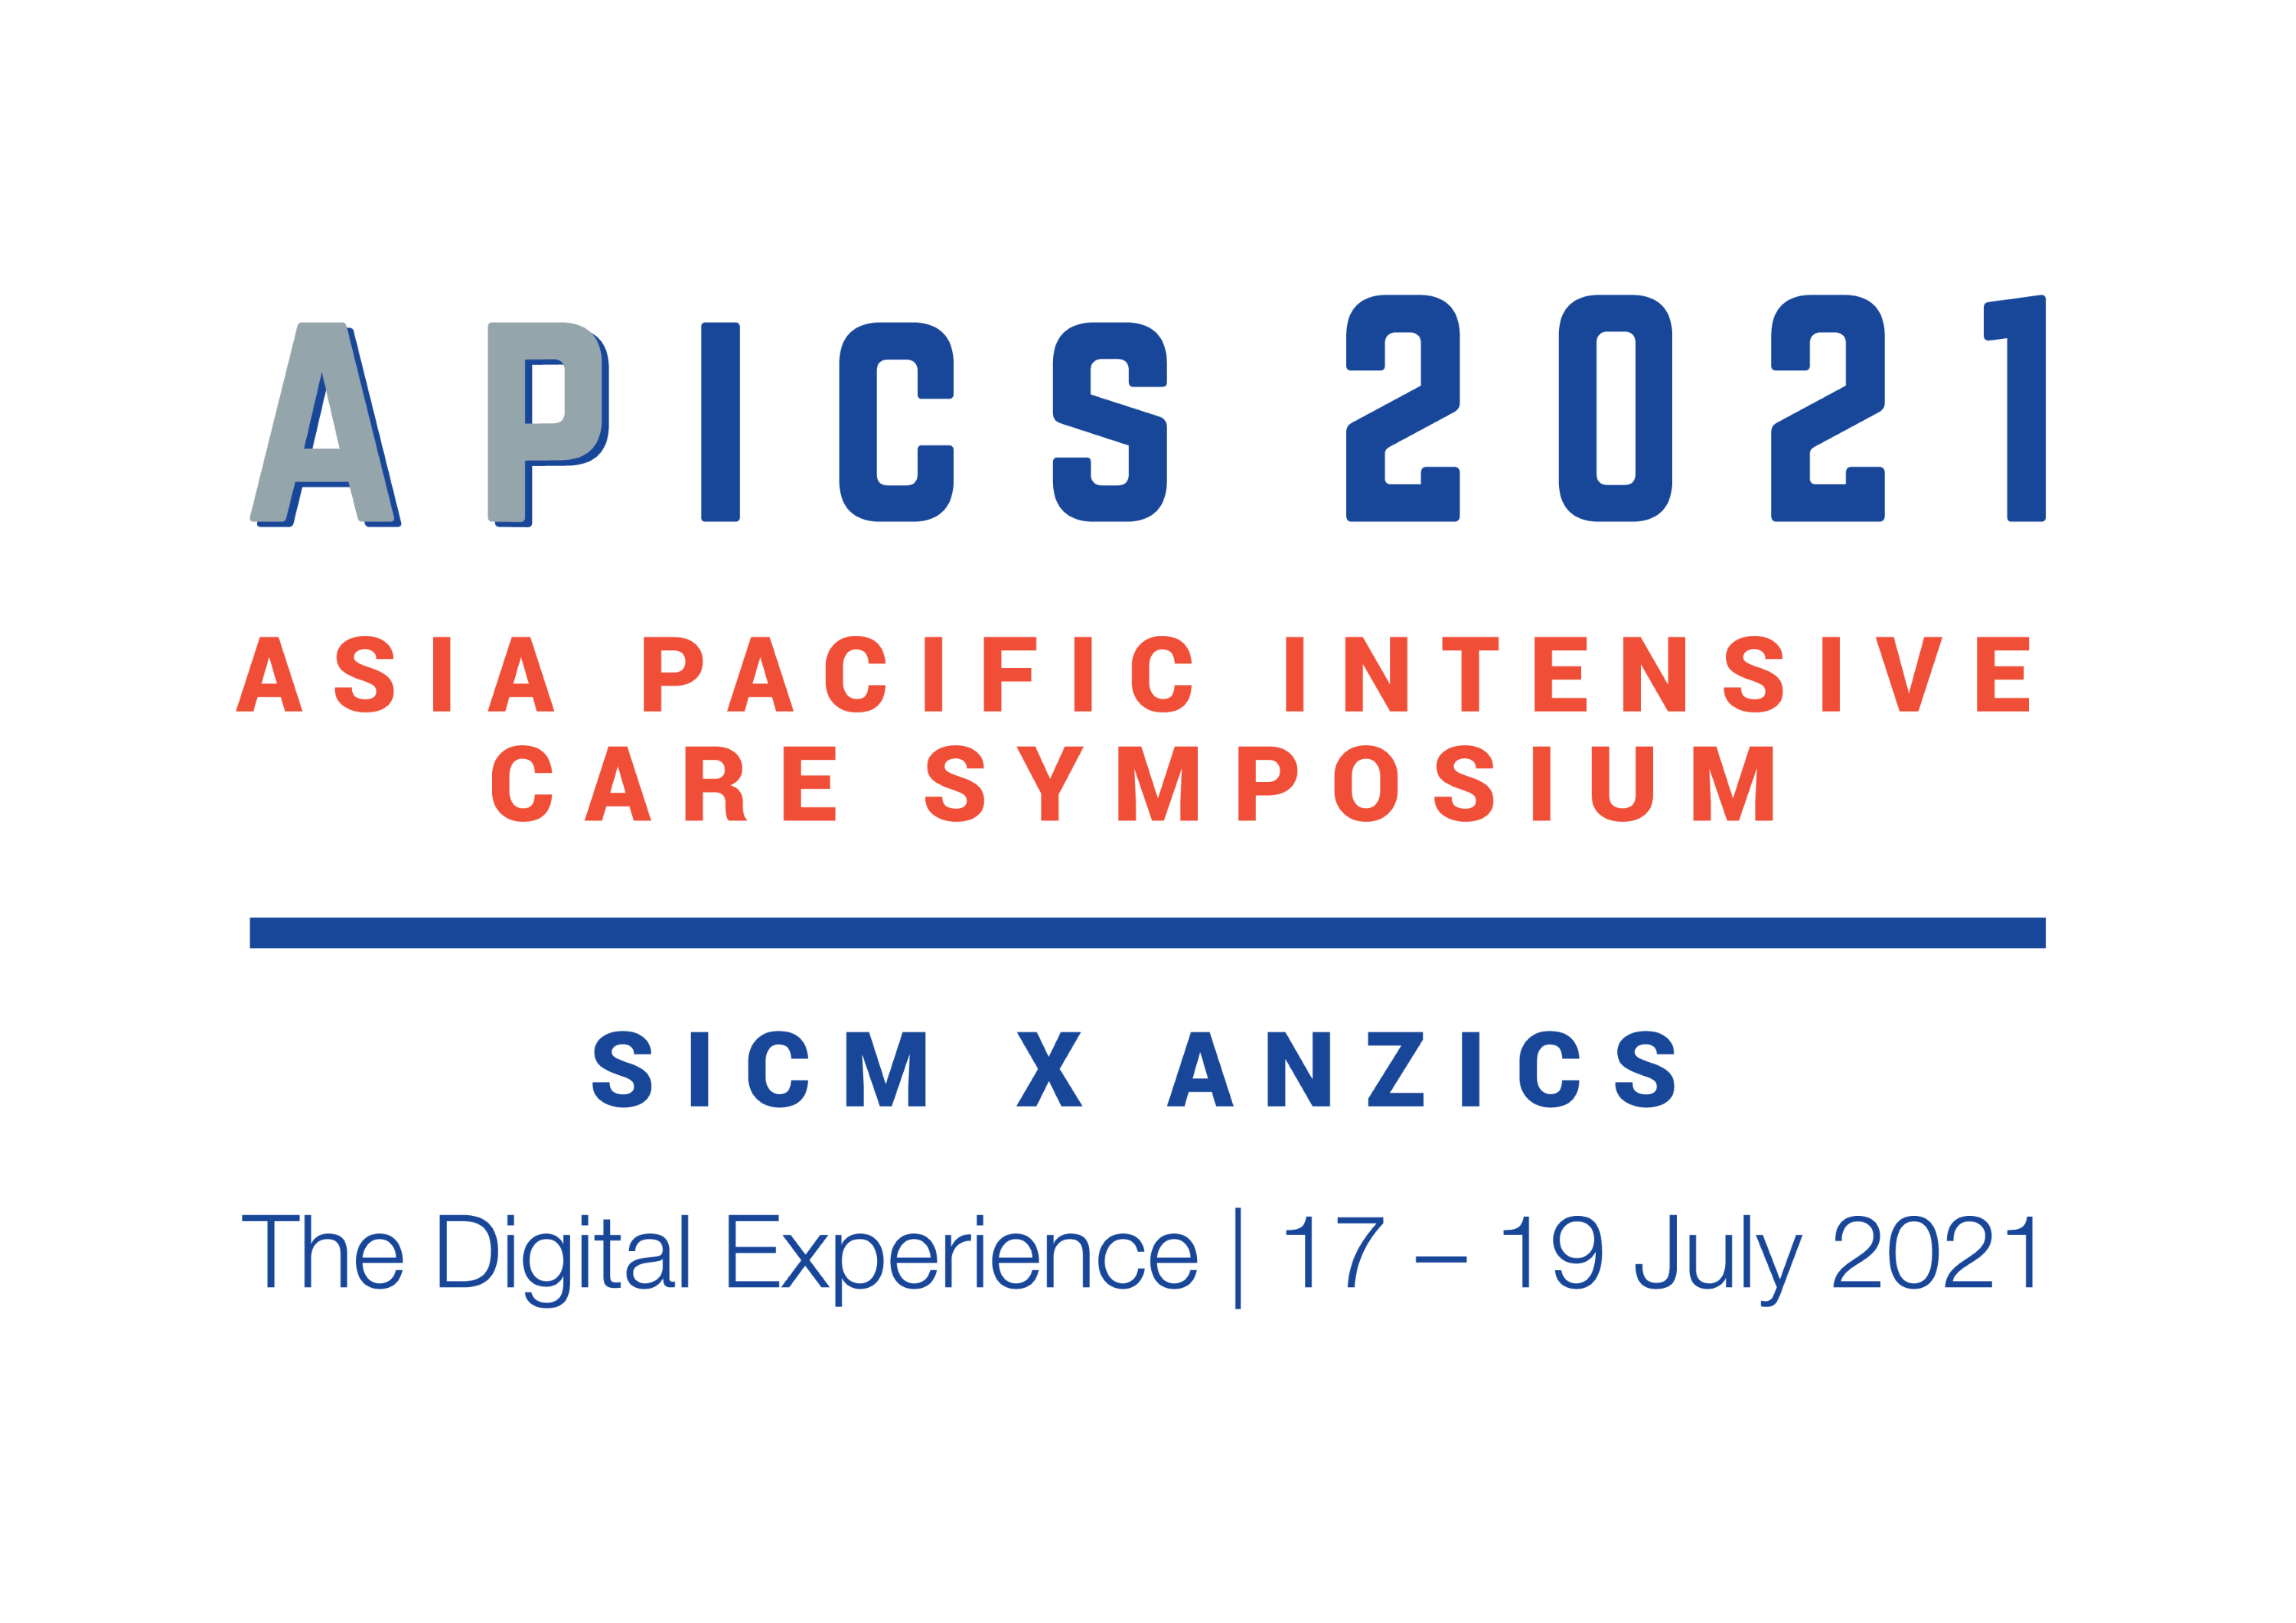 Asia Pacific Intensive Care Symposium (APICS) 2021, Singapore